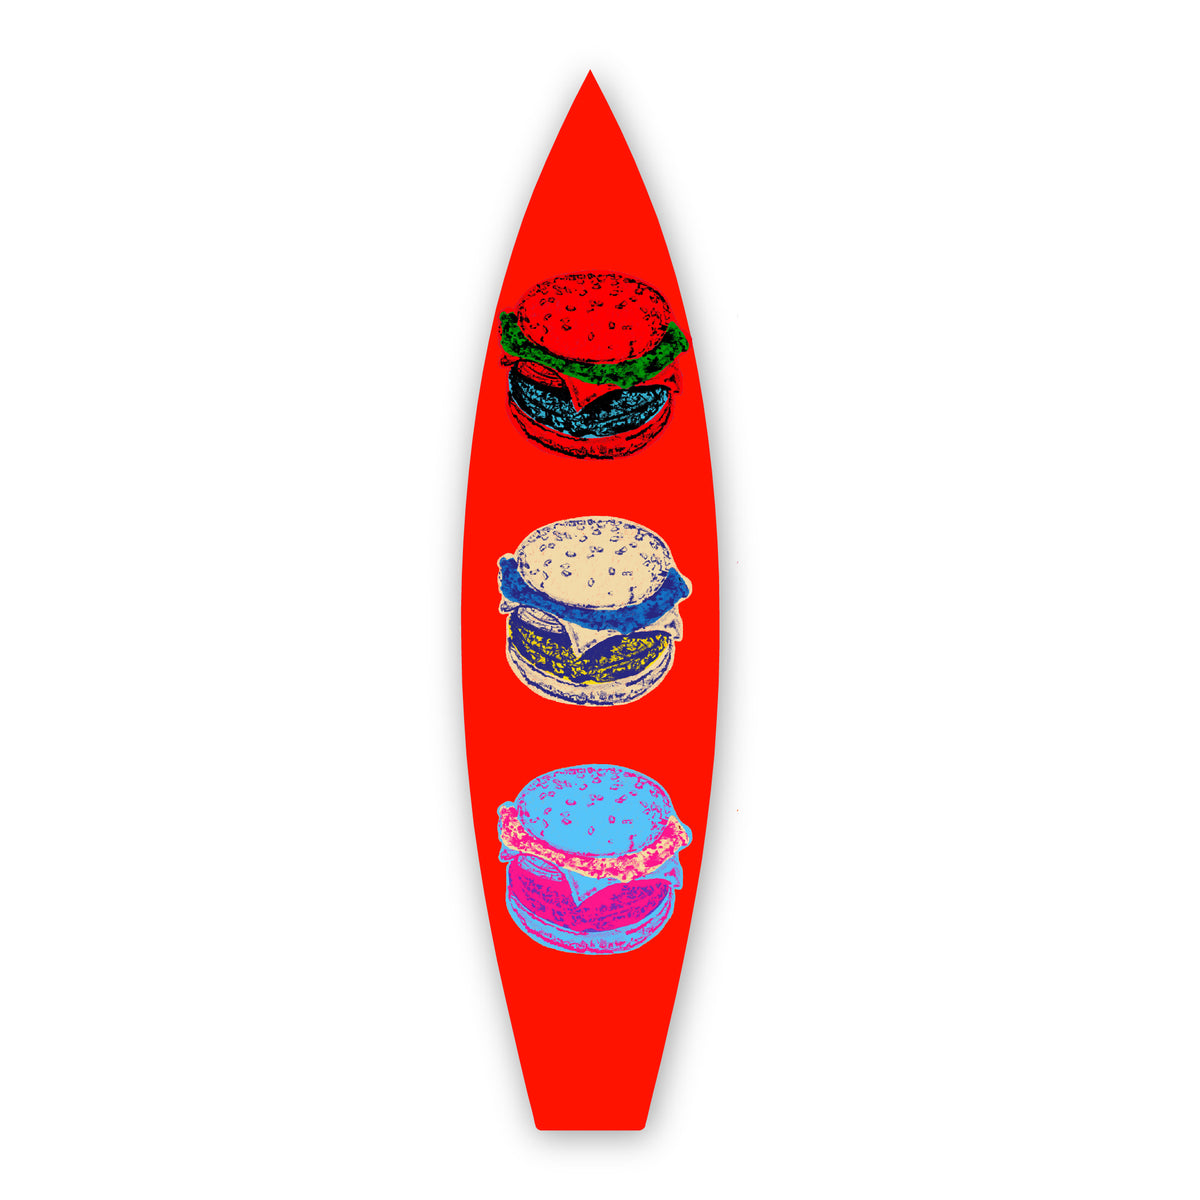 Retro Burger - Surfboard Art